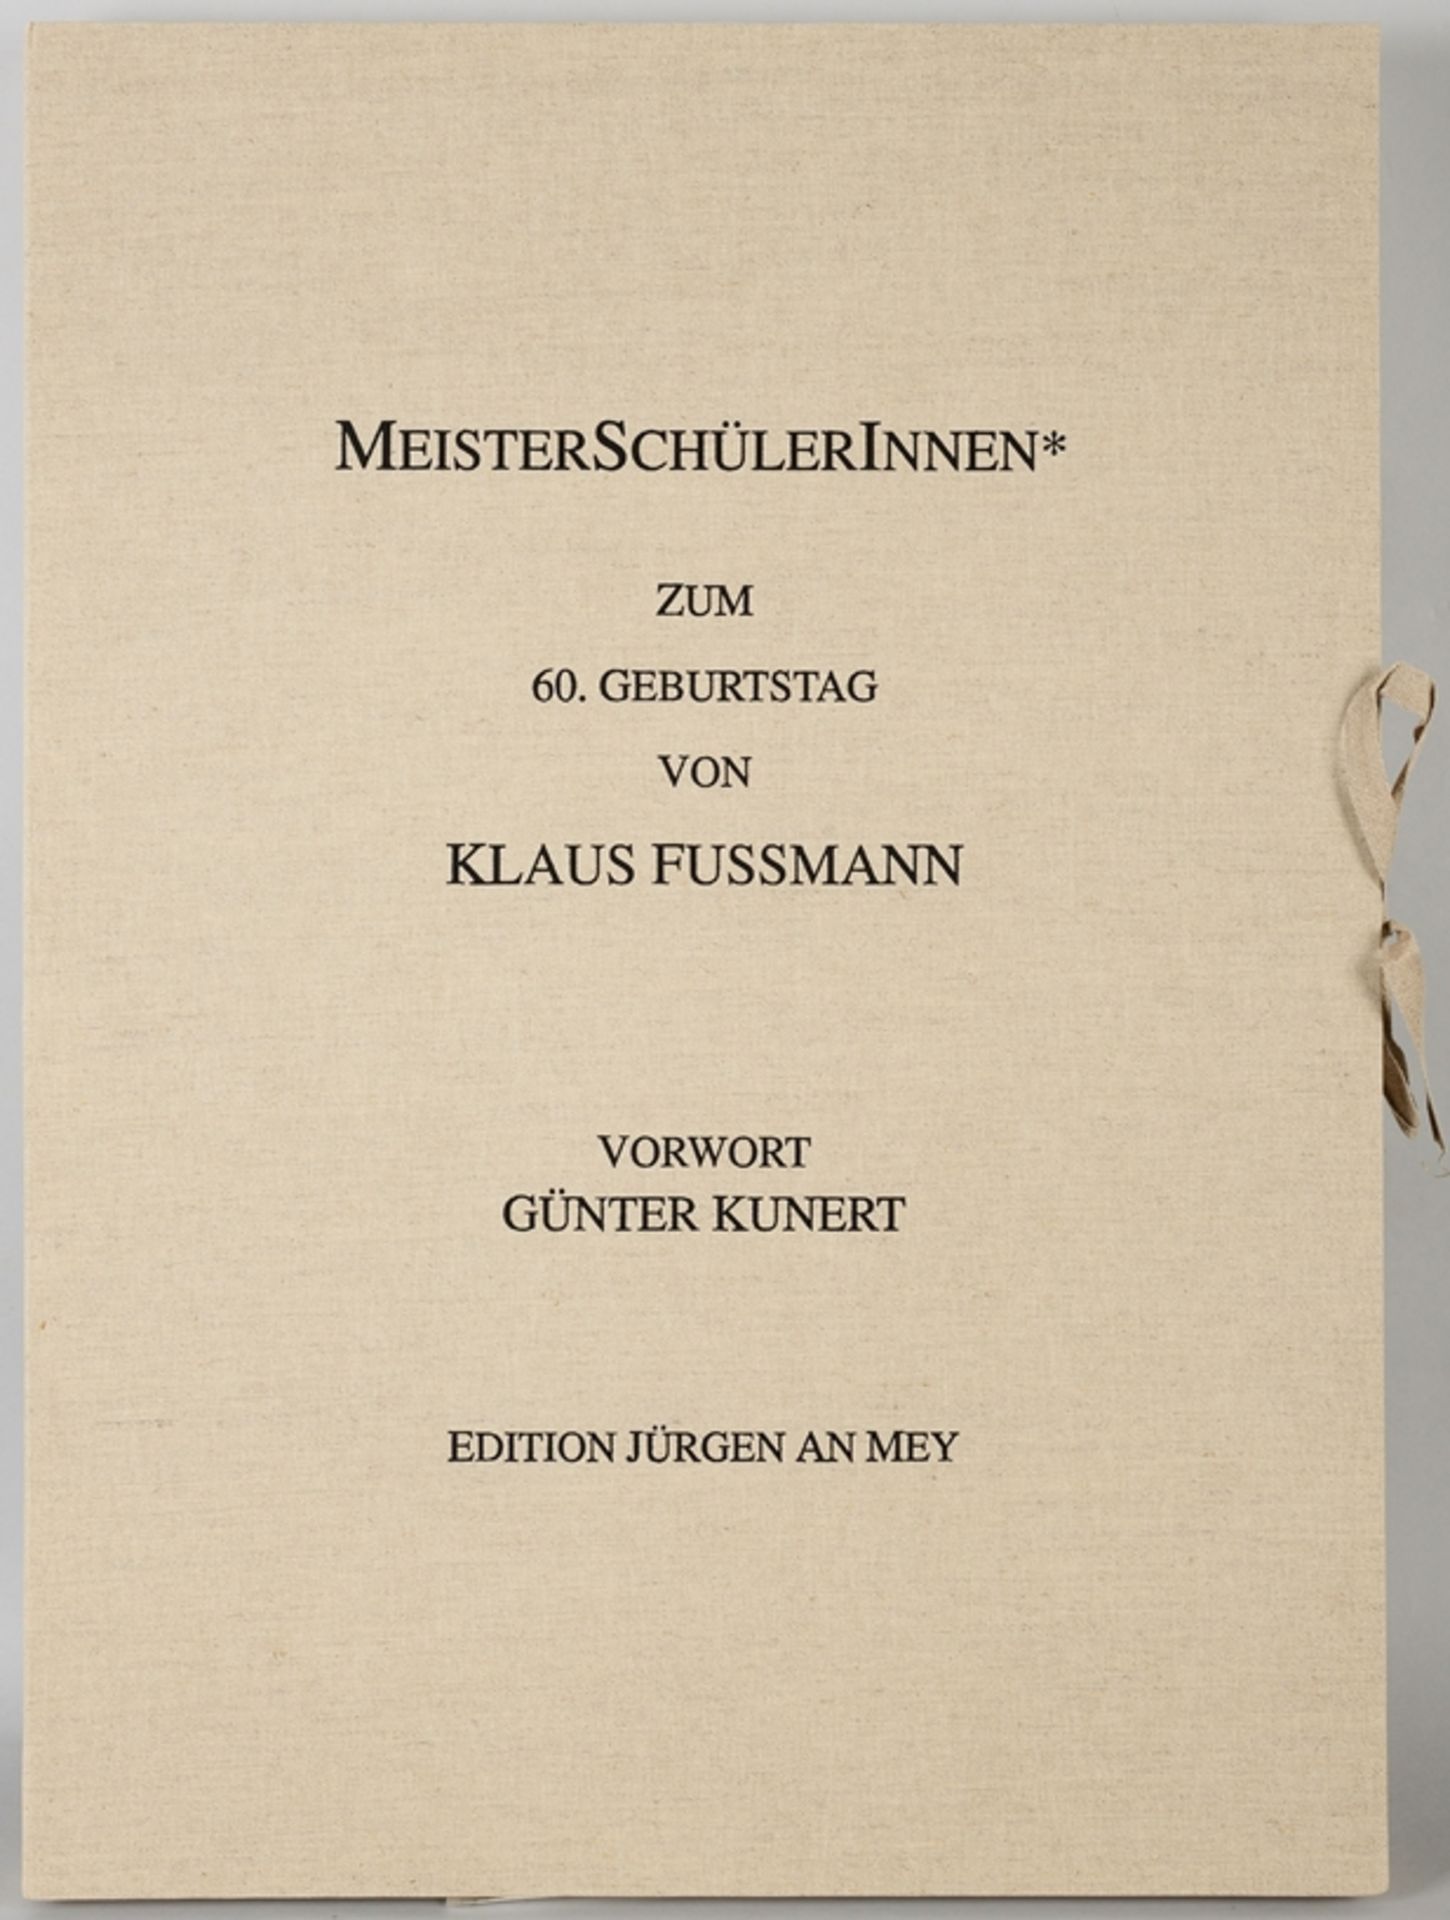 MeisterSchülerInnen* Zum 60. Geburtstag von Klaus Fussmann, 1998